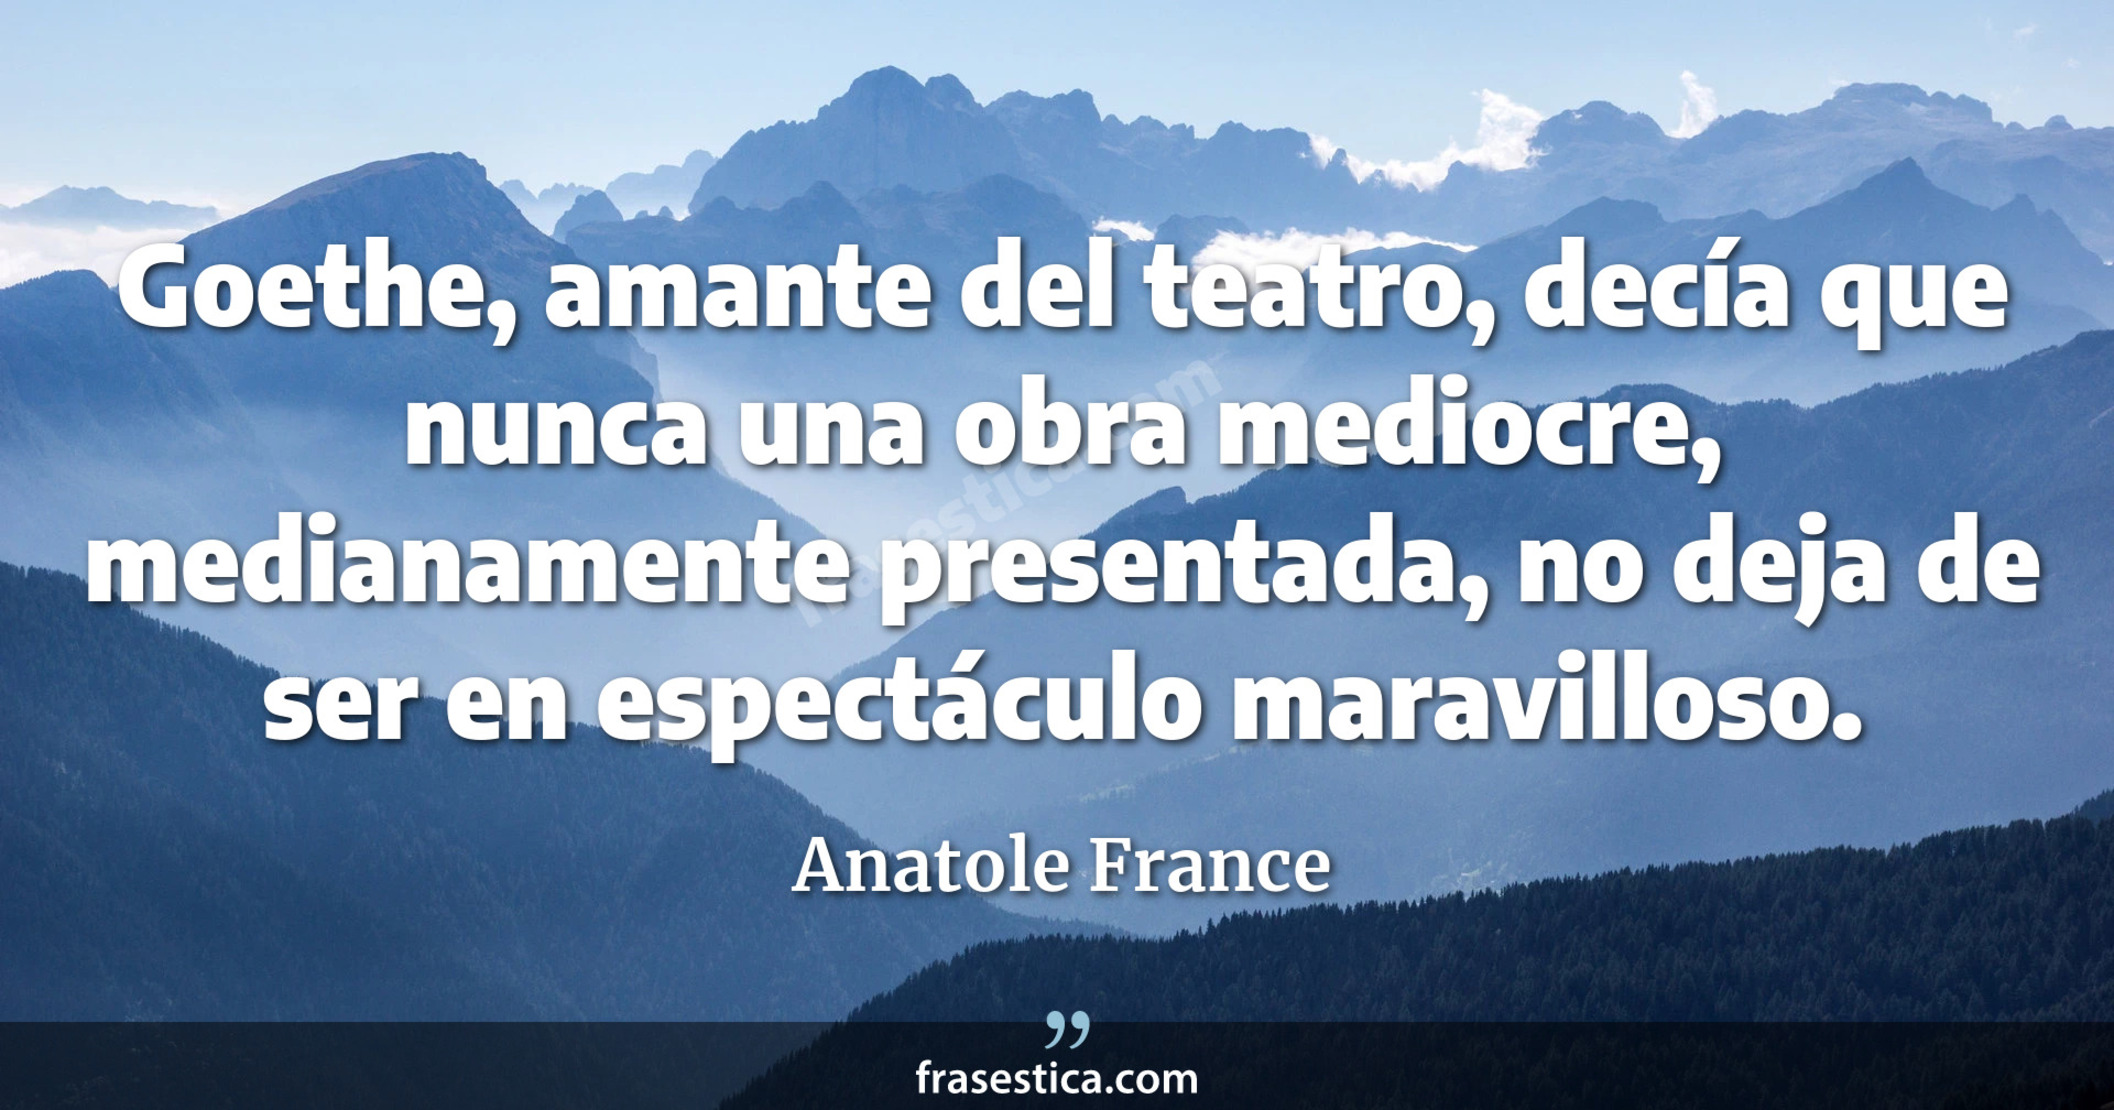 Goethe, amante del teatro, decía que nunca una obra mediocre, medianamente presentada, no deja de ser en espectáculo maravilloso. - Anatole France